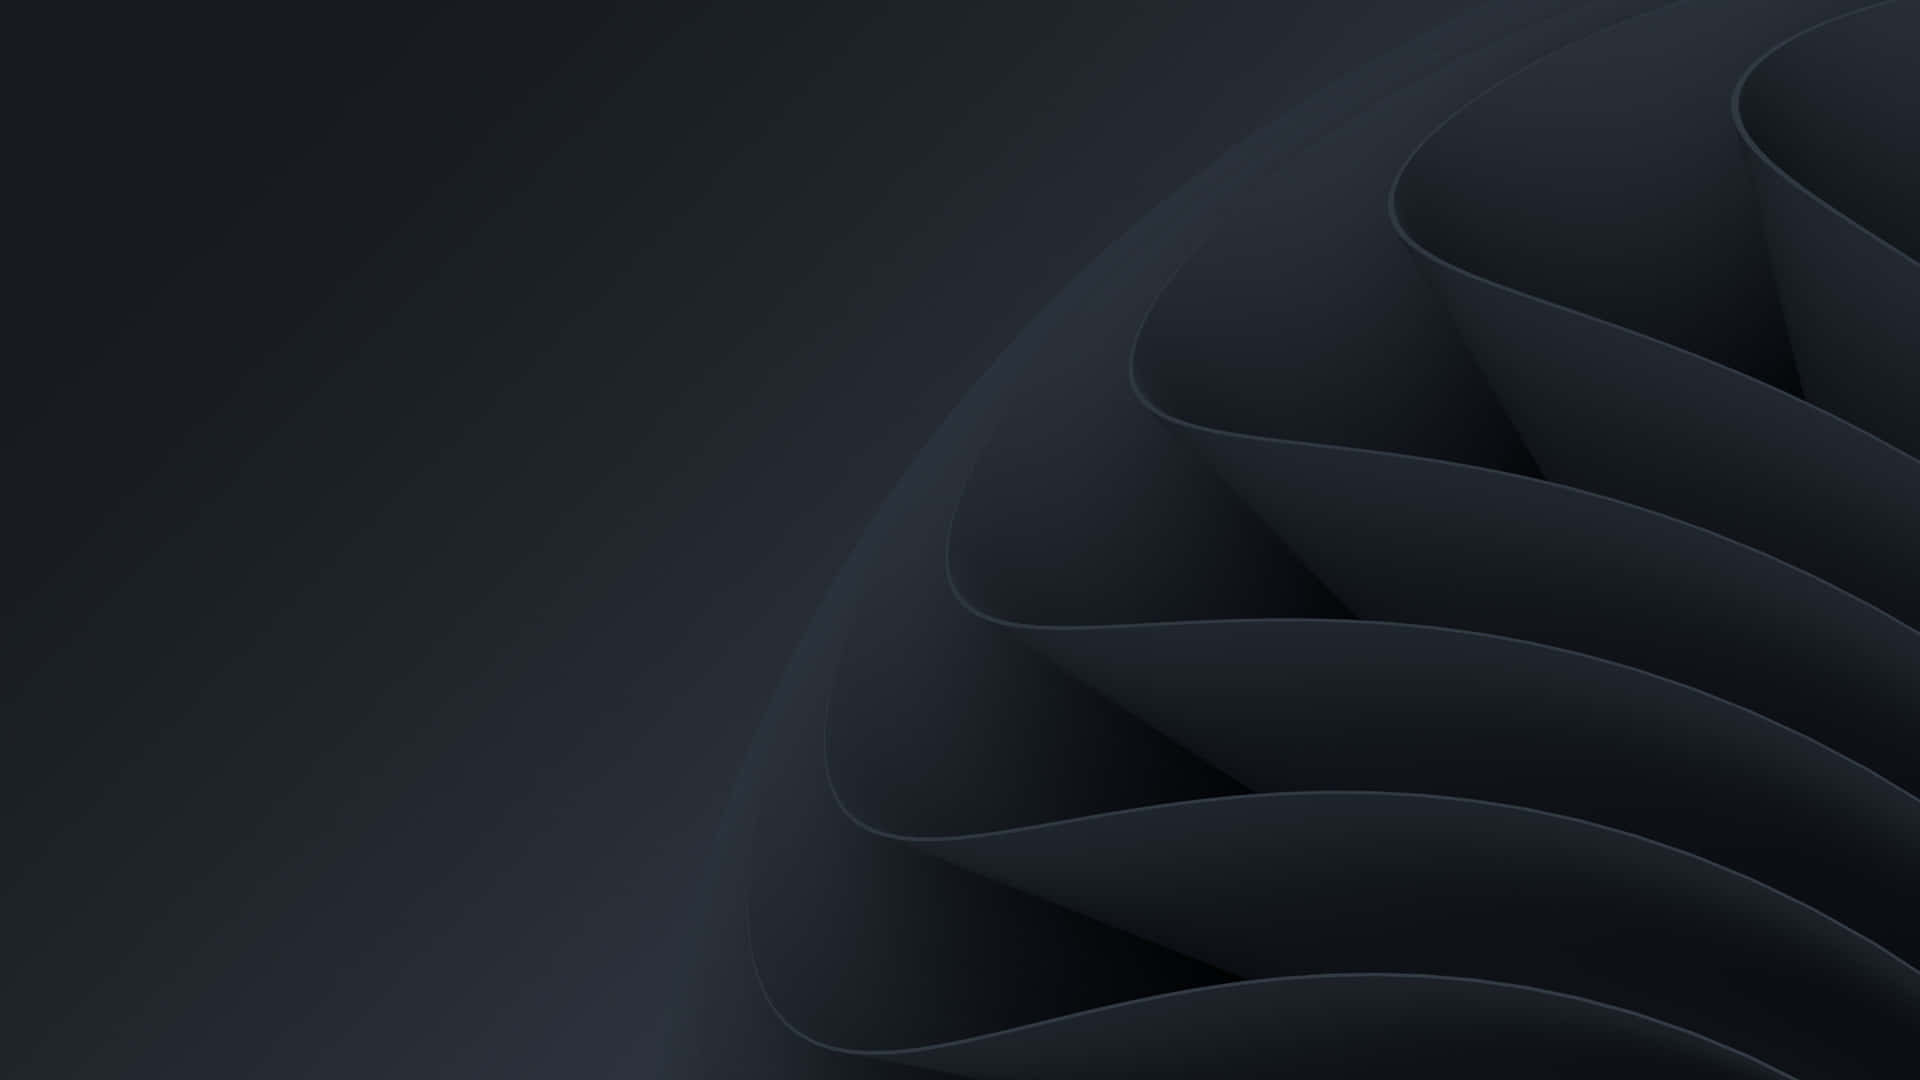 Schwarzerabstrakter Hintergrund Mit Einer Spiralförmigen Gestalt